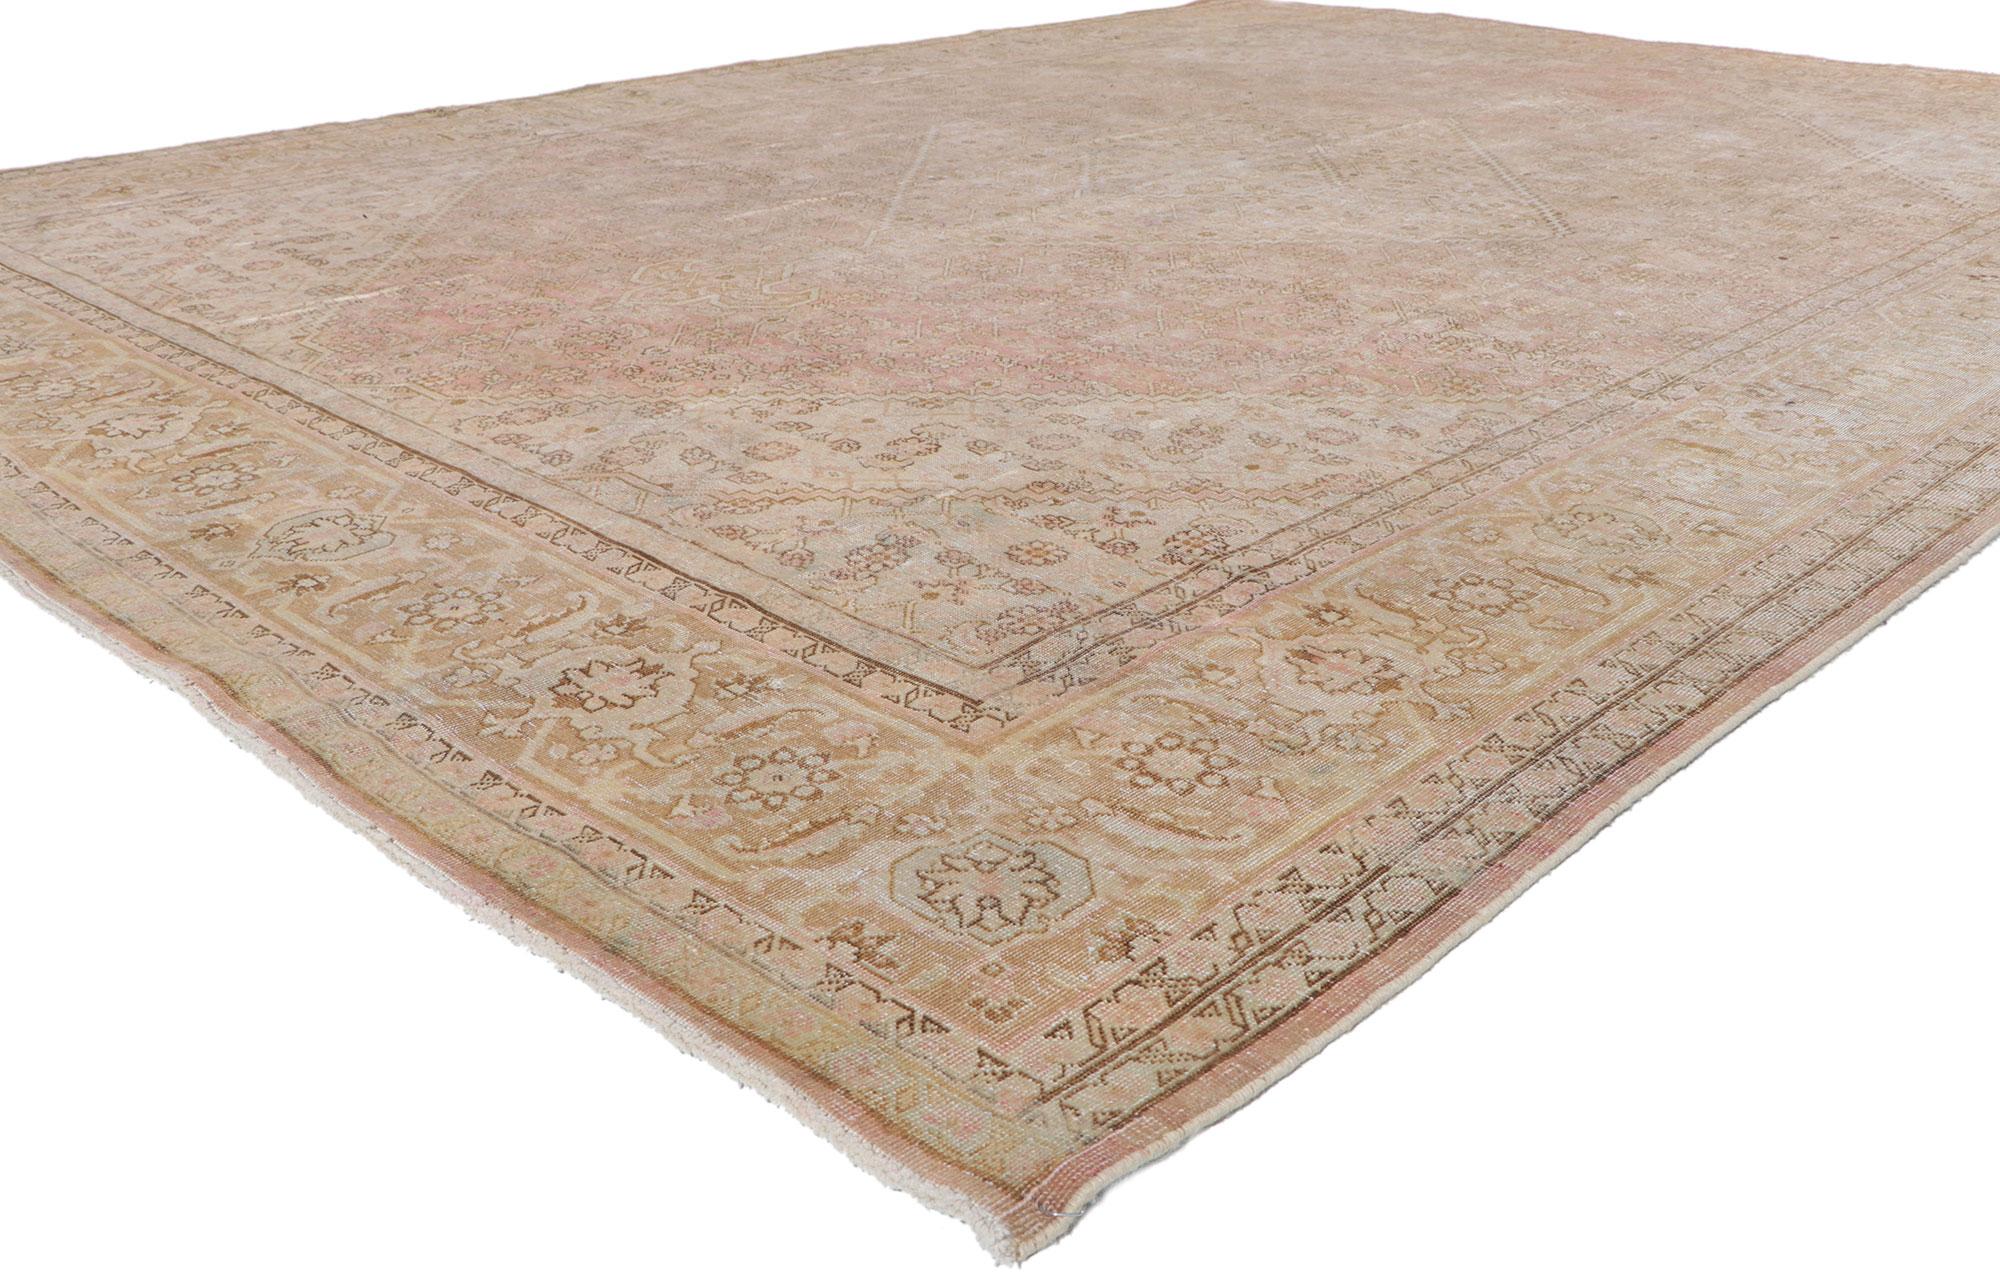 61103 Tapis Tabriz persan antique et vieilli, 08'10 x 09'10.

Ce tapis Tabriz persan antique en laine nouée à la main est l'union parfaite de la finesse et du luxe décontracté. Embrassant l'essence de la simplicité rustique, le design Herati délavé